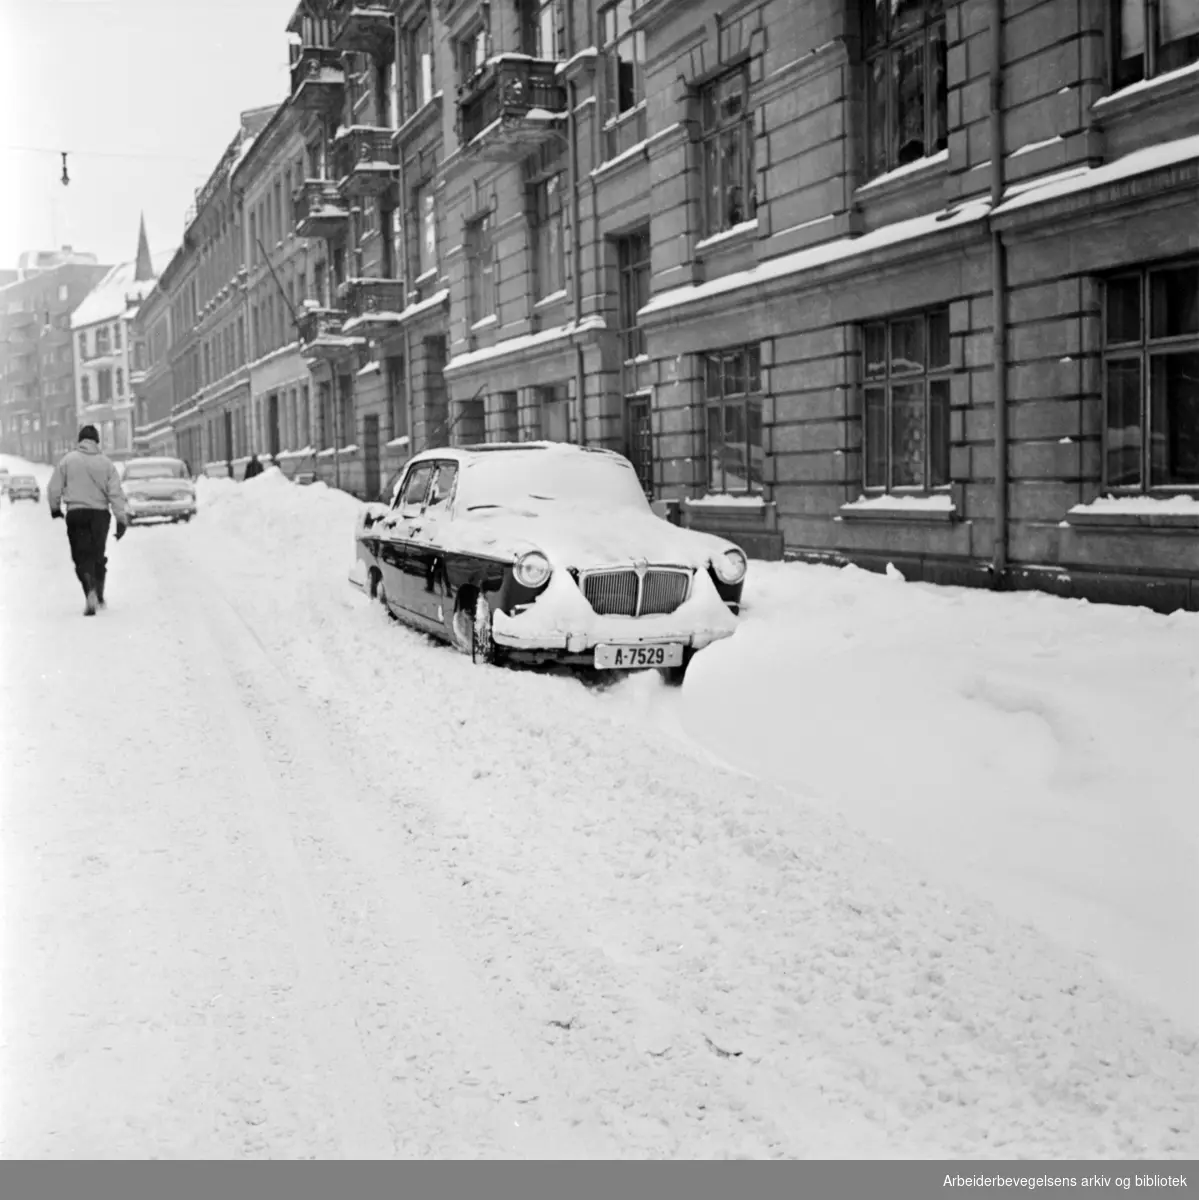 Parkert bil i snøfonn. Eilert Sundts gate. Desember 1962.